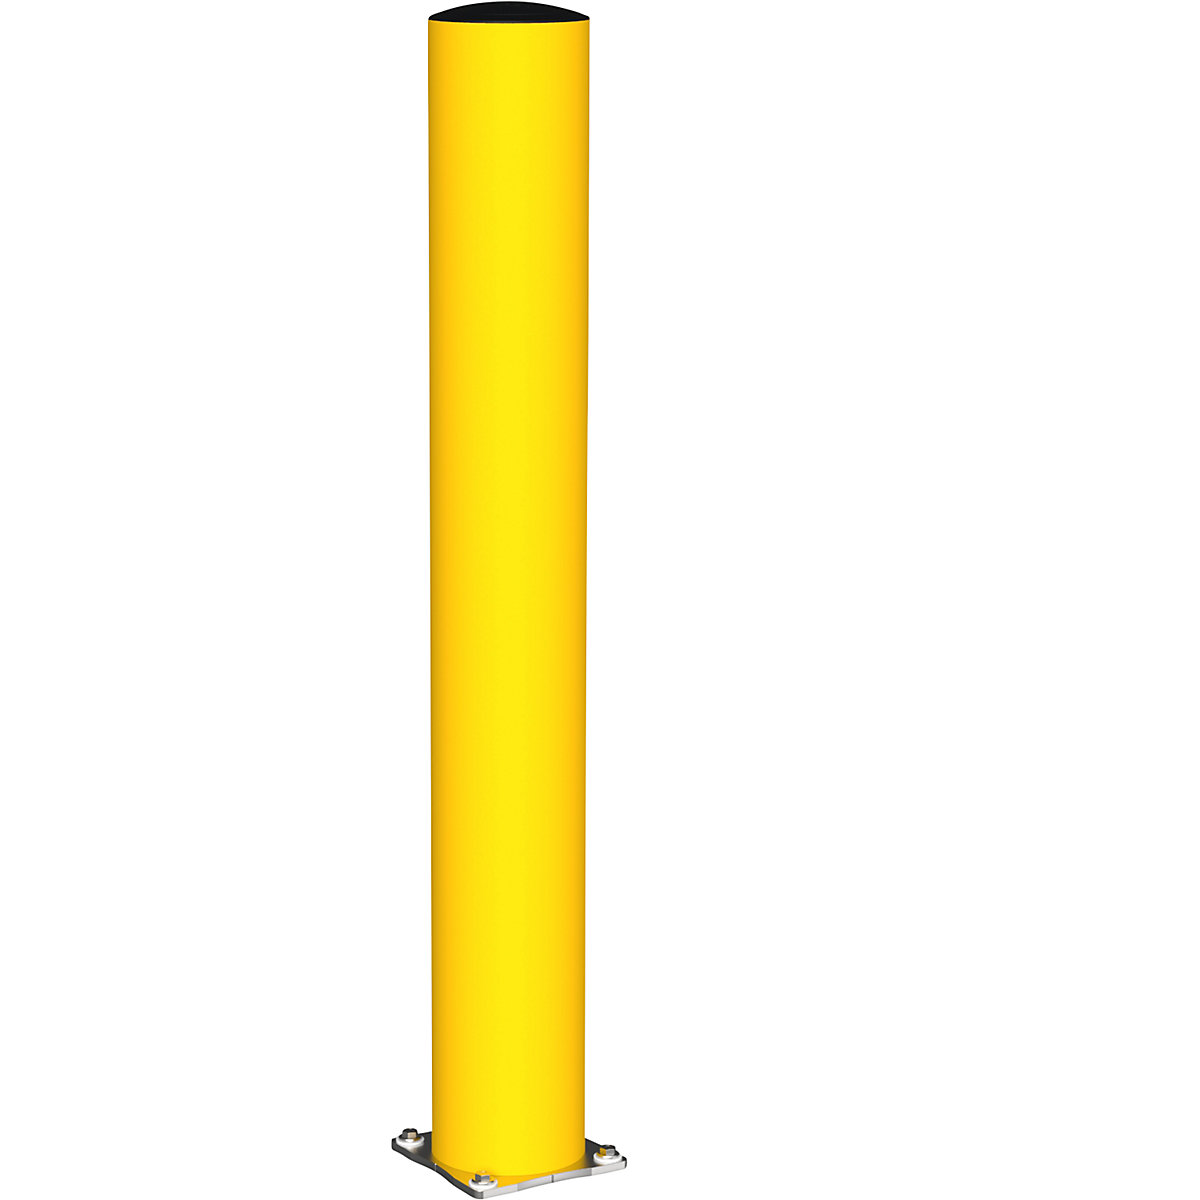 Poteau de protection FLEX IMPACT, Ø 200 mm, hauteur 1500 mm, jaune, platine en inox